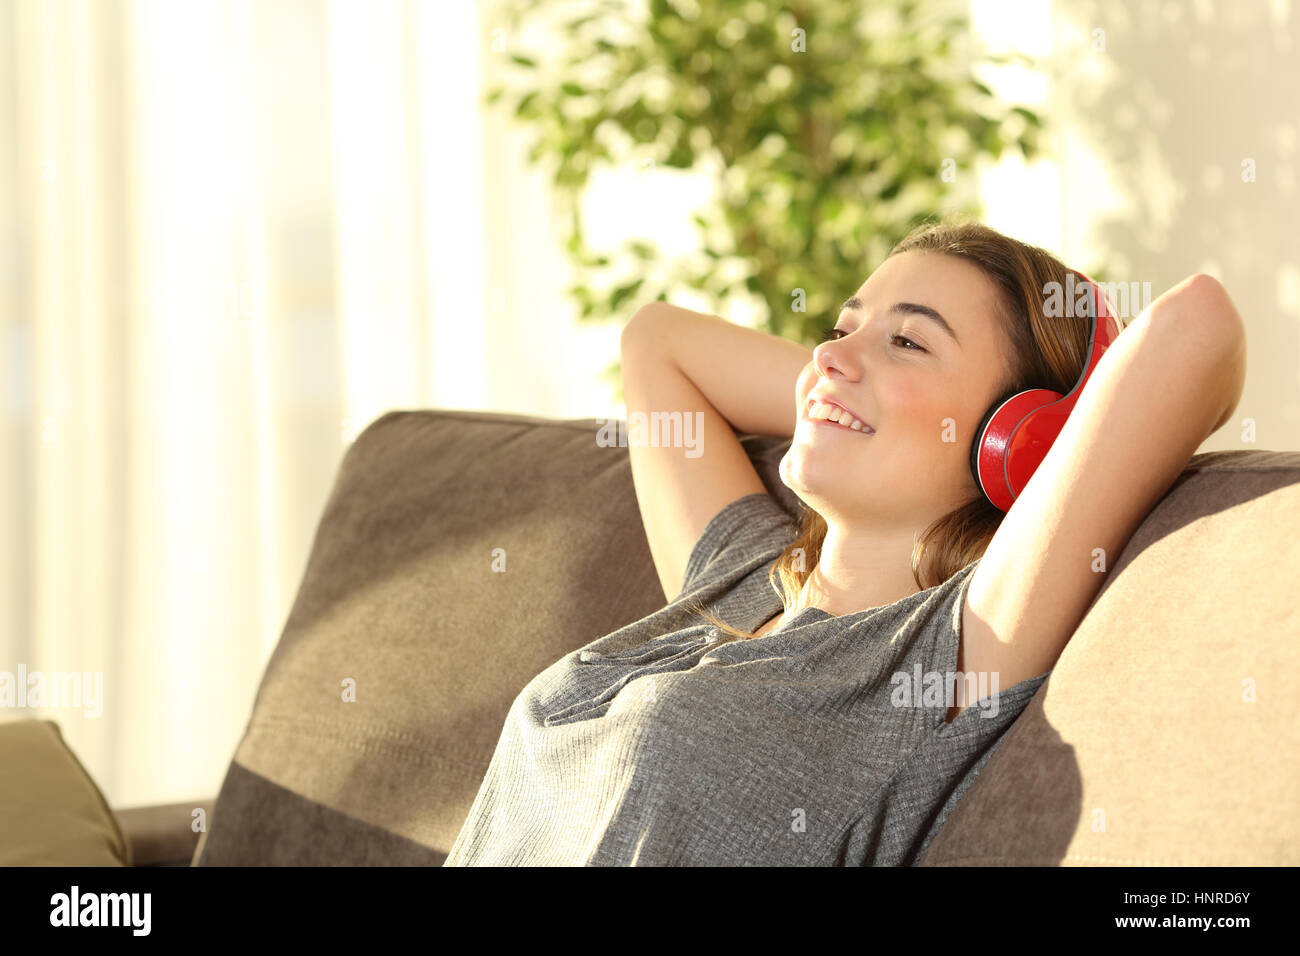 Man entspannt Teen Rast- und hören Musik mit drahtlosen Kopfhörern sitzen auf einem Sofa im Wohnzimmer zu Hause mit warmem Licht Stockfoto